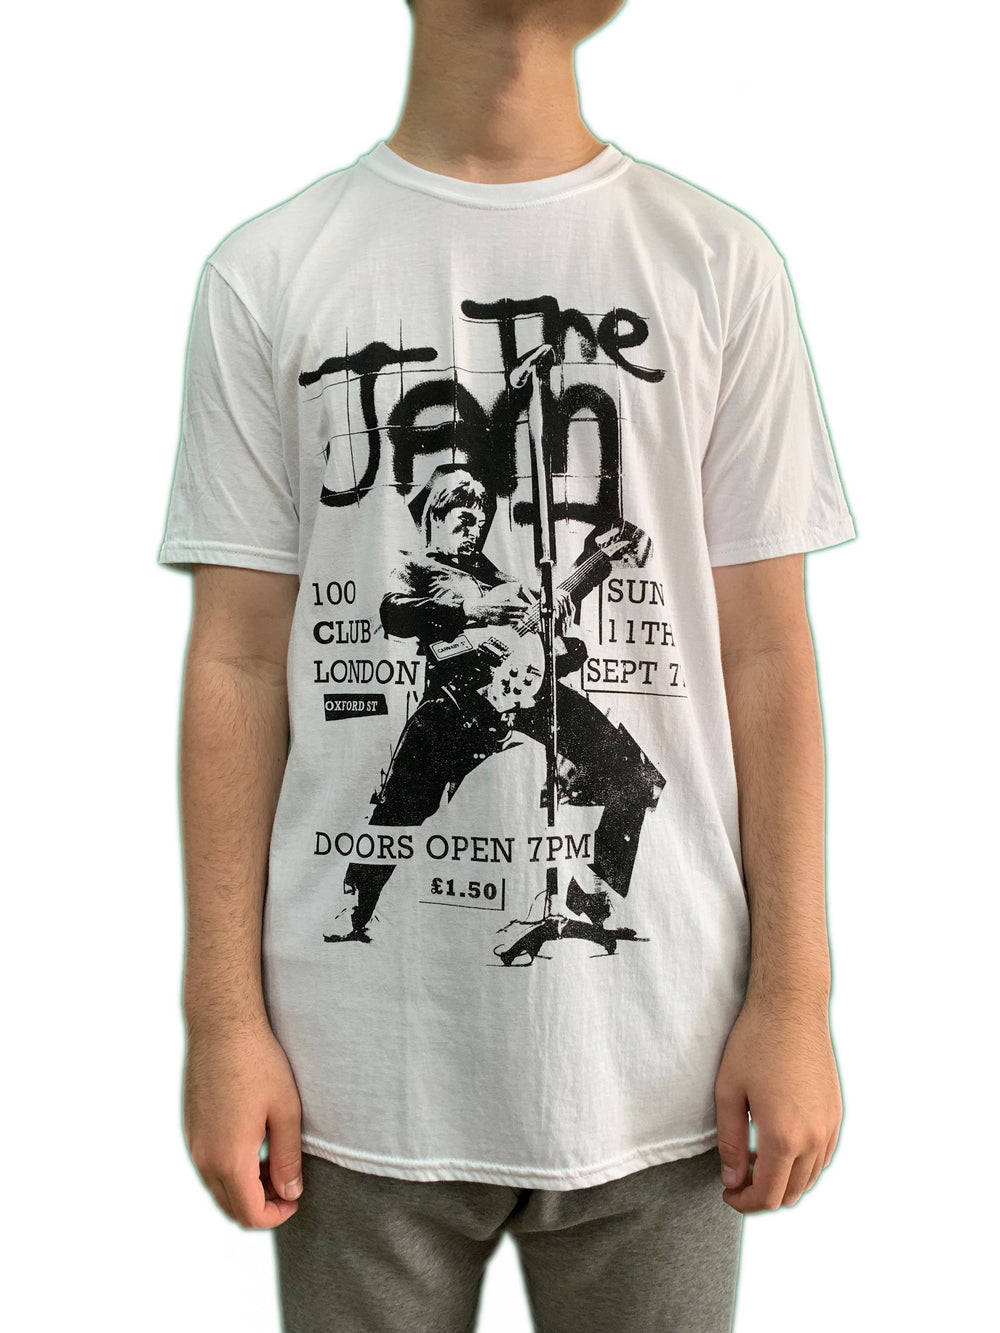 Jam 100 Club 1977 Unisex Official Tee Shirt Brand New Various Sizes Paul Weller Mod